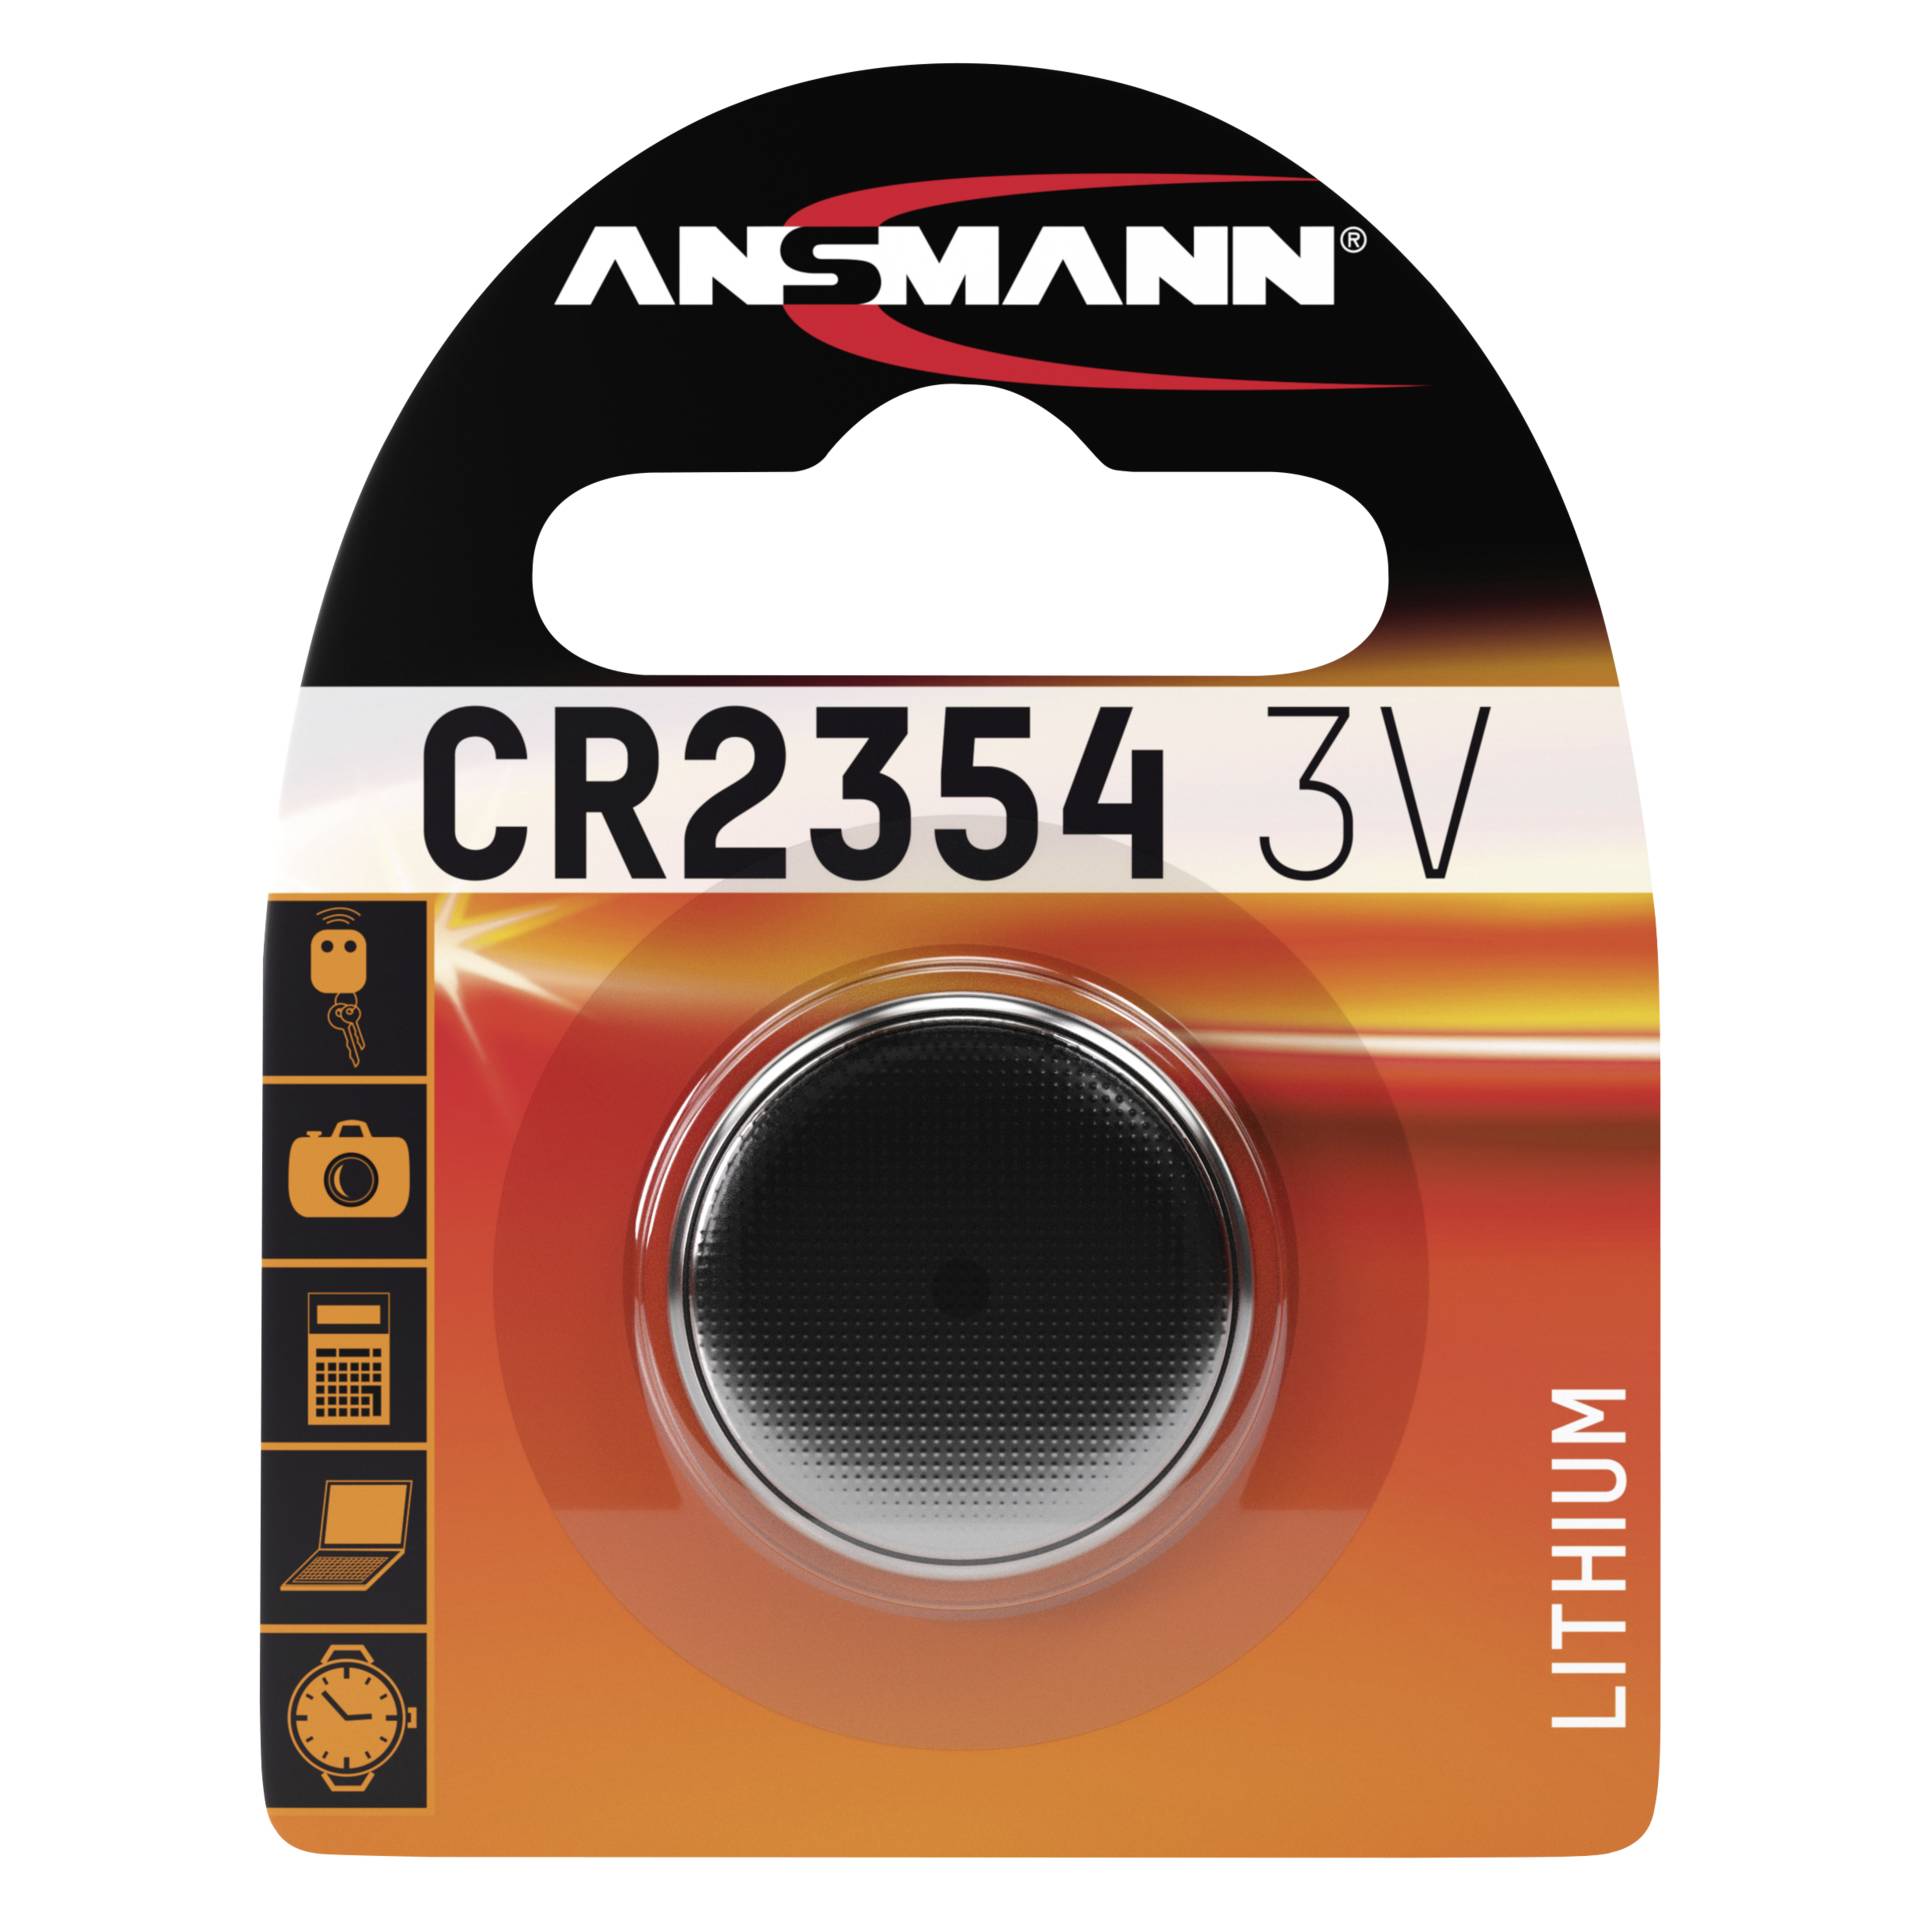 Ansmann CR 2354